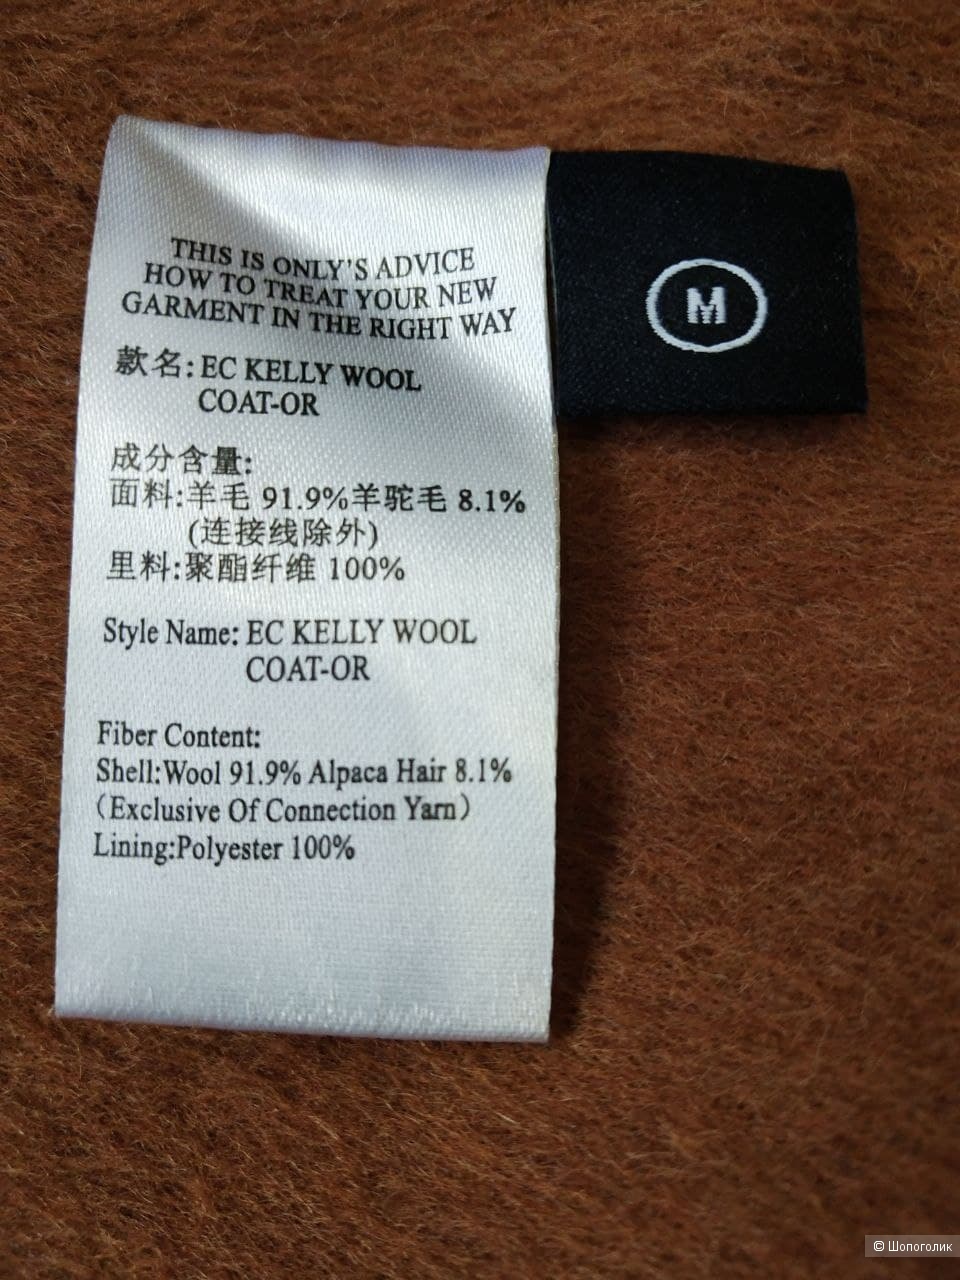 Пальто - халат, Оnly Premium Wool, M